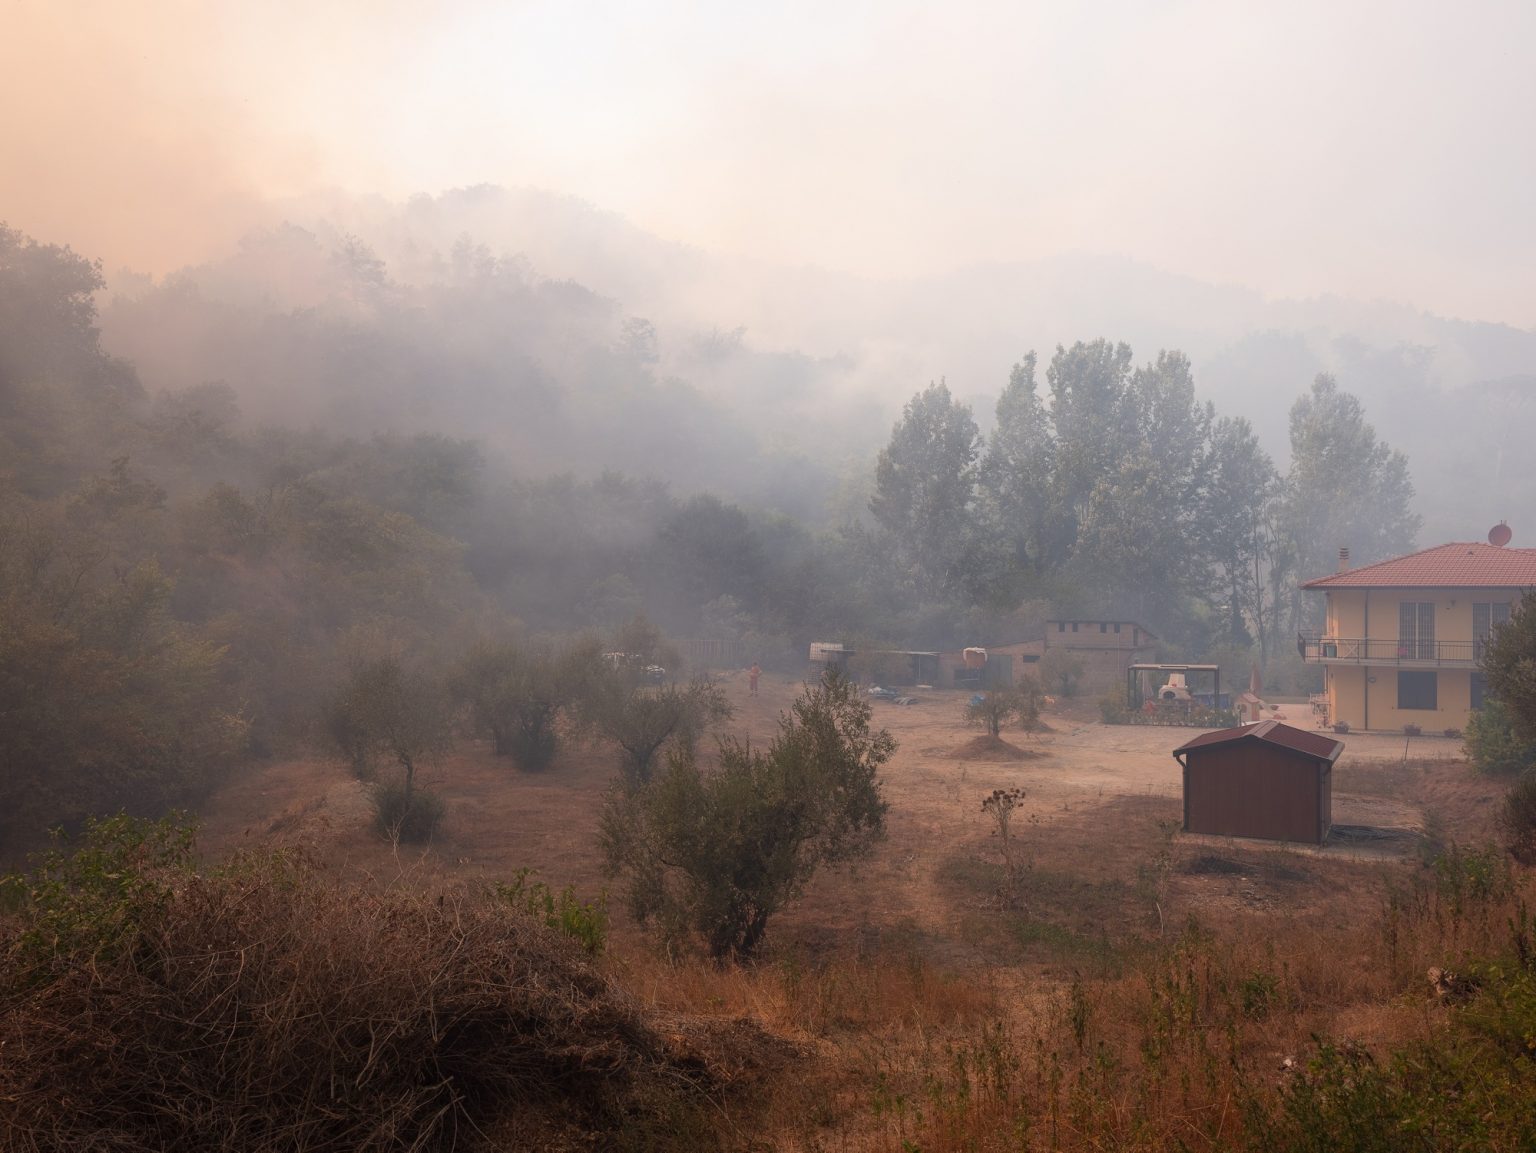 Incendio vicino ad abitazioni a Laiano.

Laiano (Vecchiano), Italia, 2022
-
-
Fire near houses in Laiano.

Laiano (Vecchiano), Italy, 2022